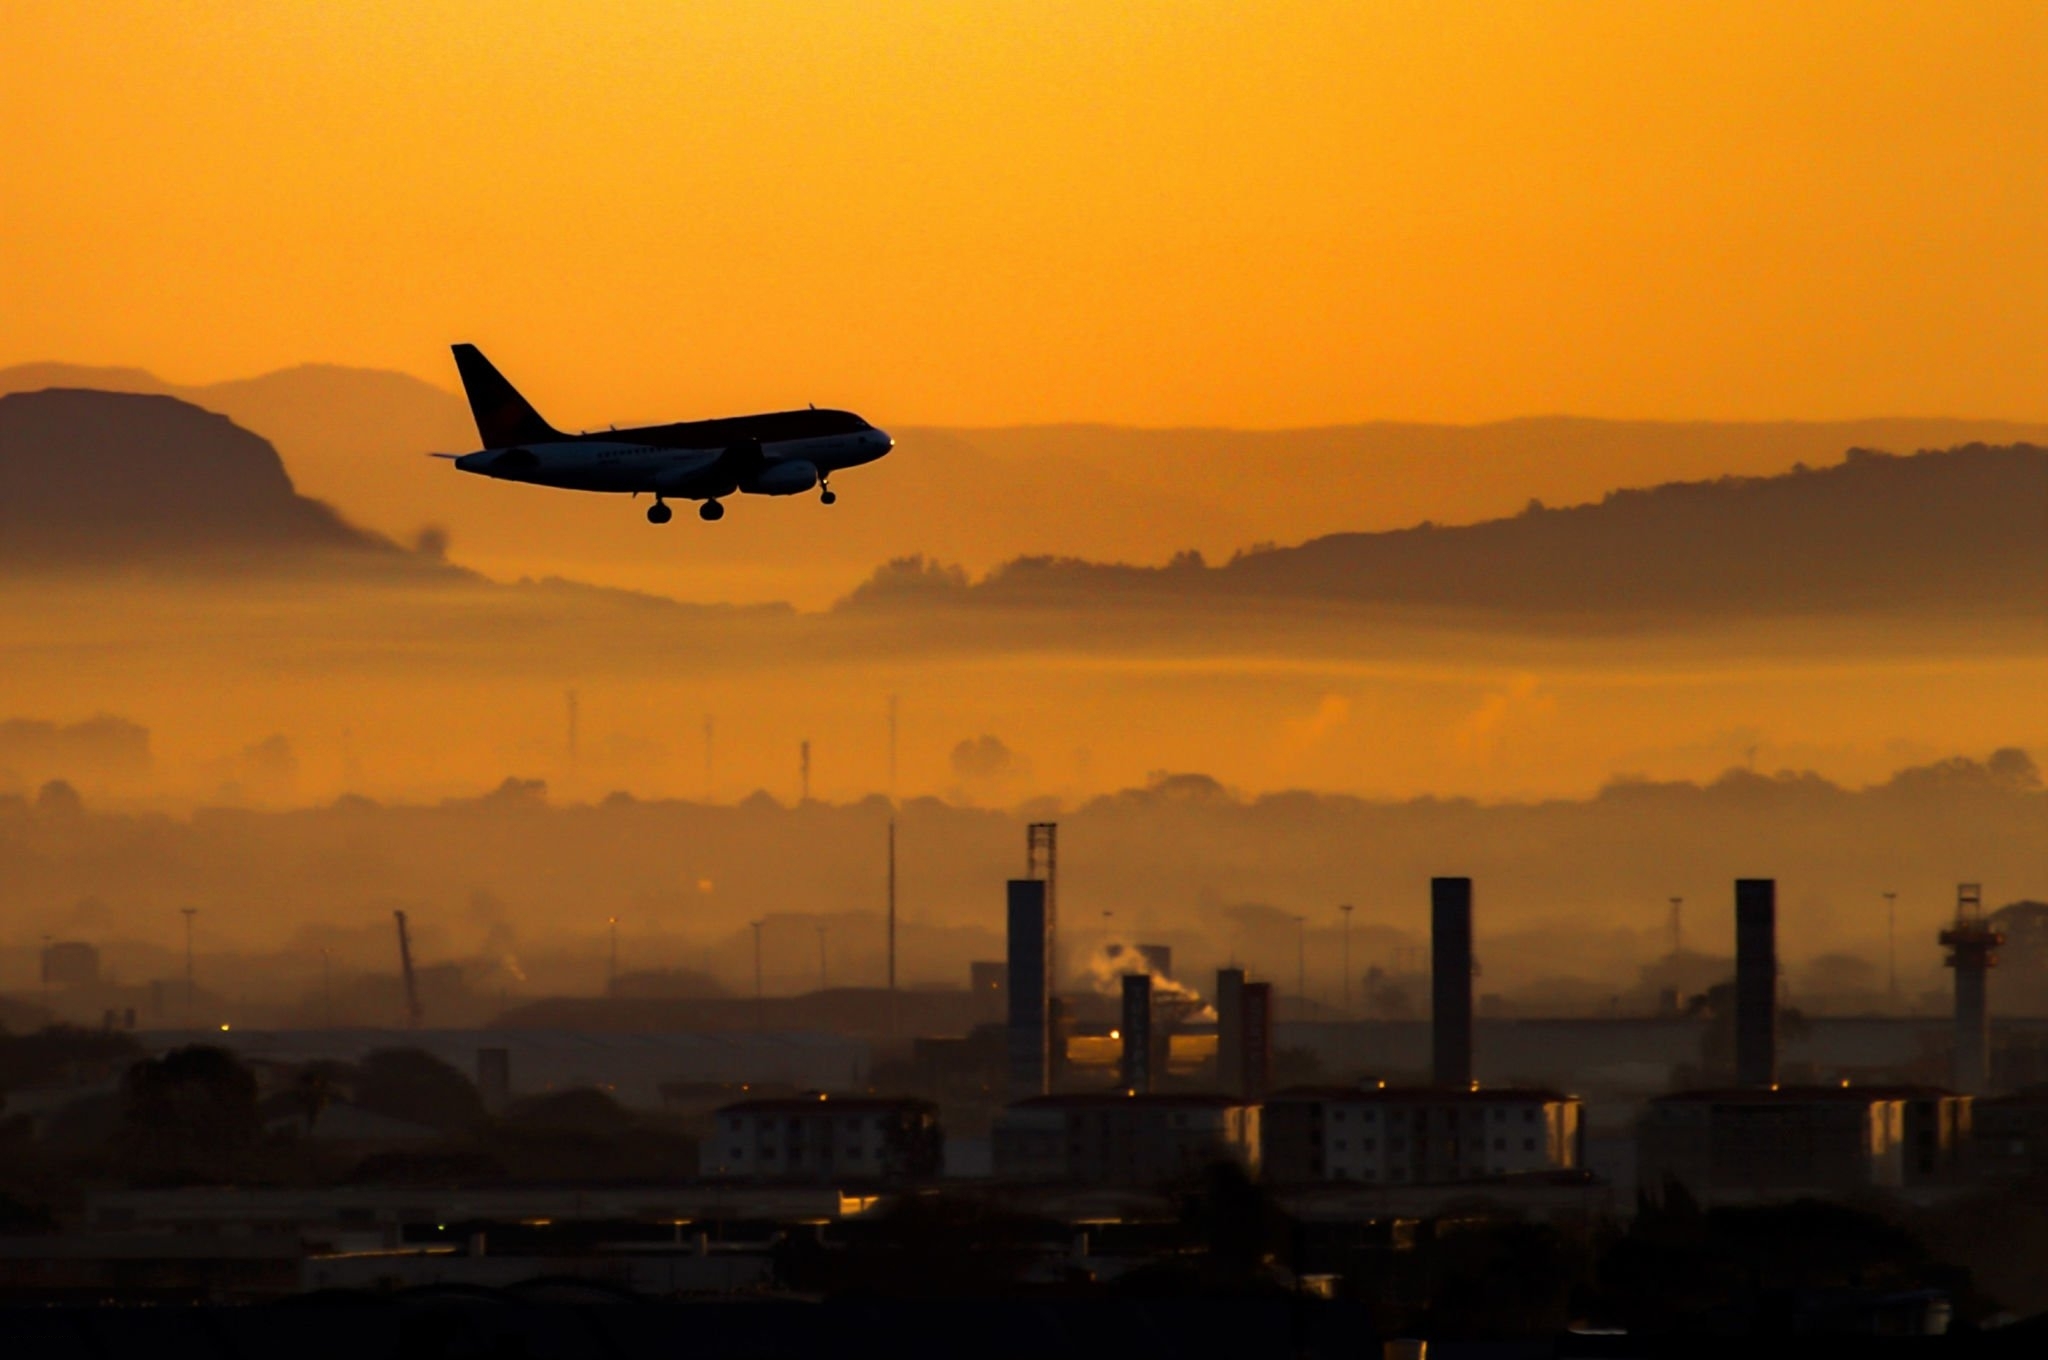 Voos para temporada de verão: Brasil ganha 26 rotas aéreas em cinco estados | Imagem de avião no pôr do sol | Conexão123